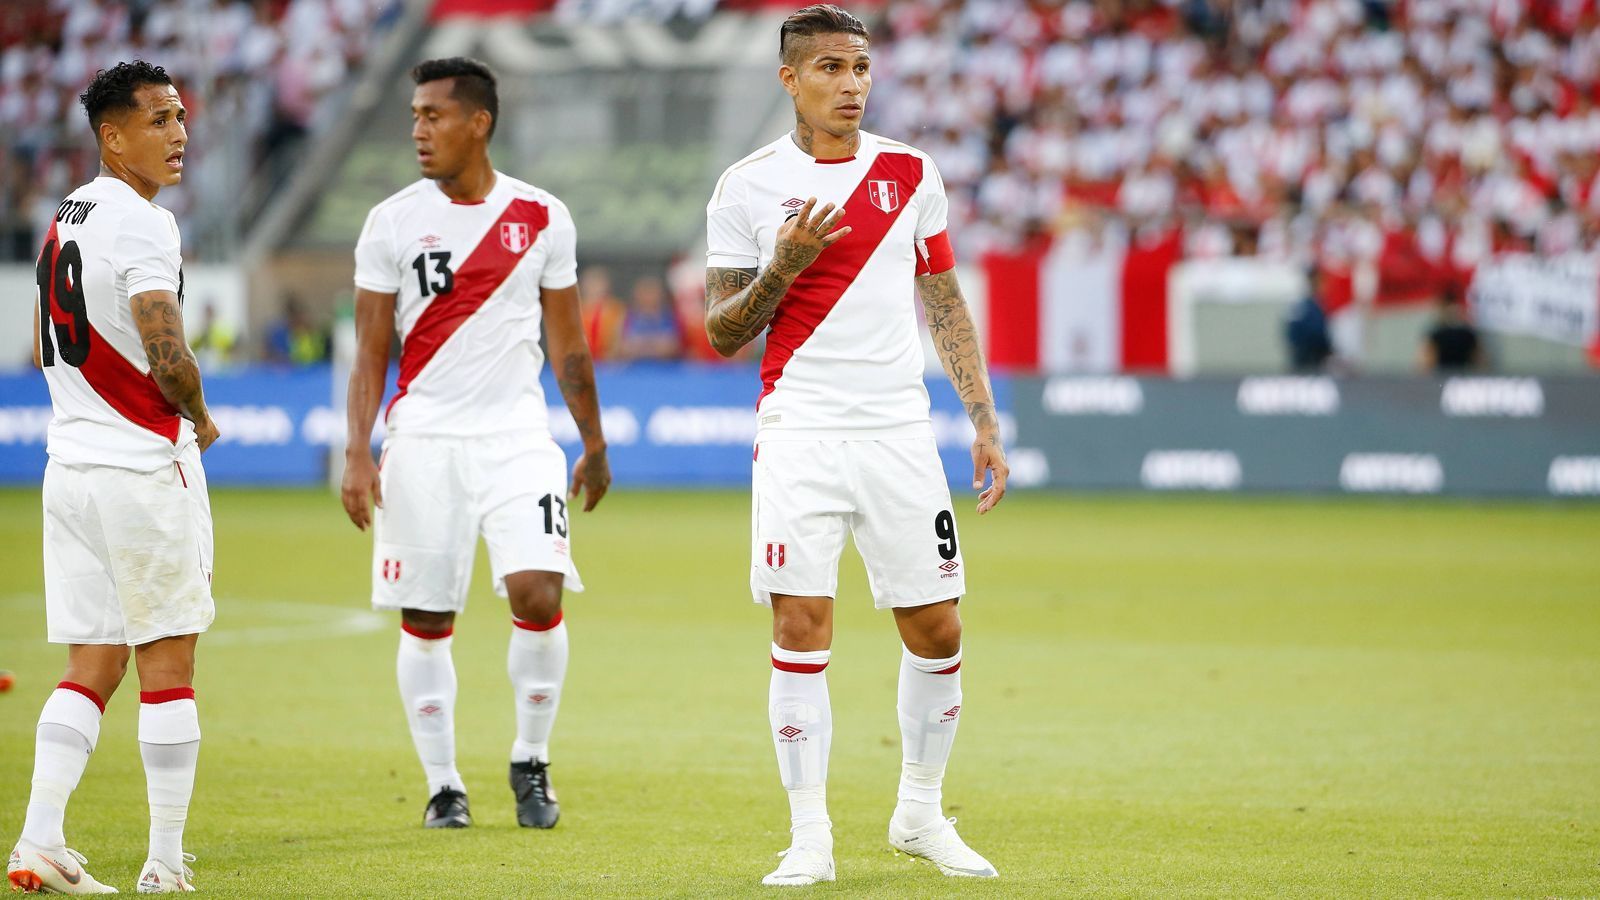 
                <strong>Peru (Gruppe C)</strong><br>
                Spitzname: "La Blanquirroja", die Weiß-Rote, nach dem weißen Trikot mit rotem Streifen. 
              